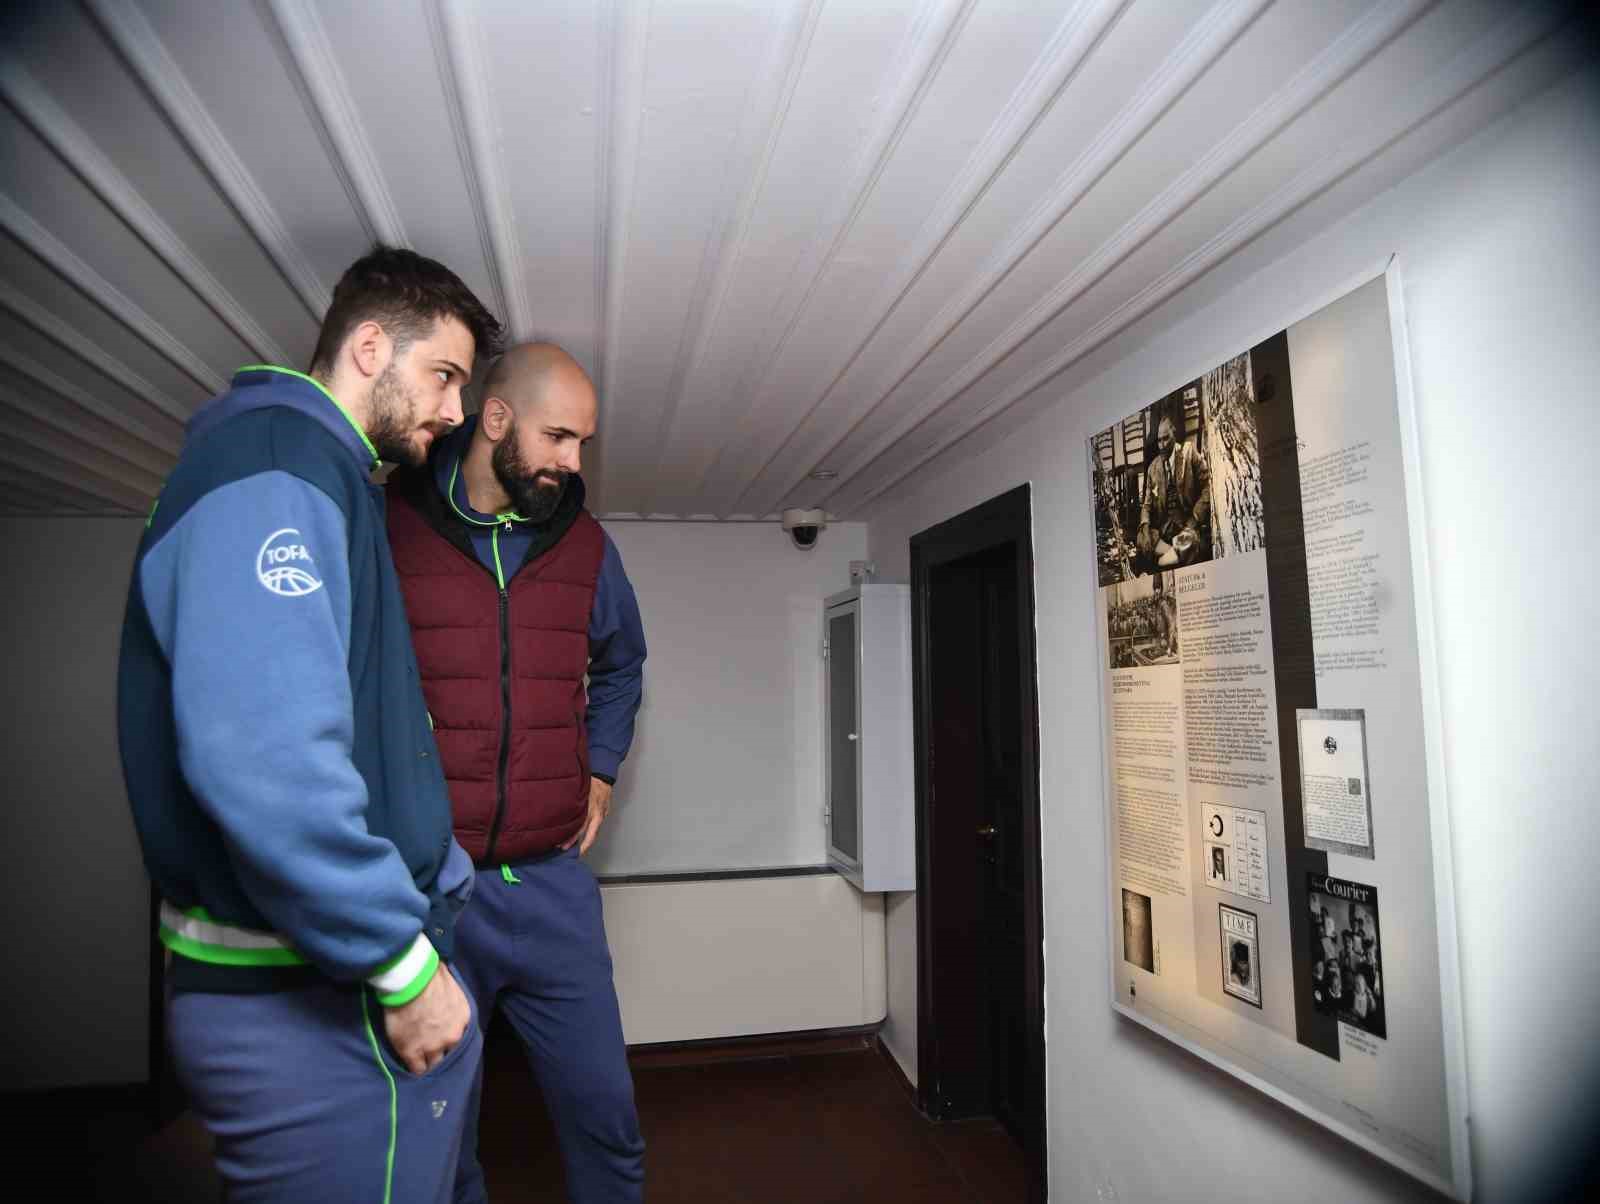 Tofaş Basketbol Takımı, Atatürk’ün evini ziyaret etti
